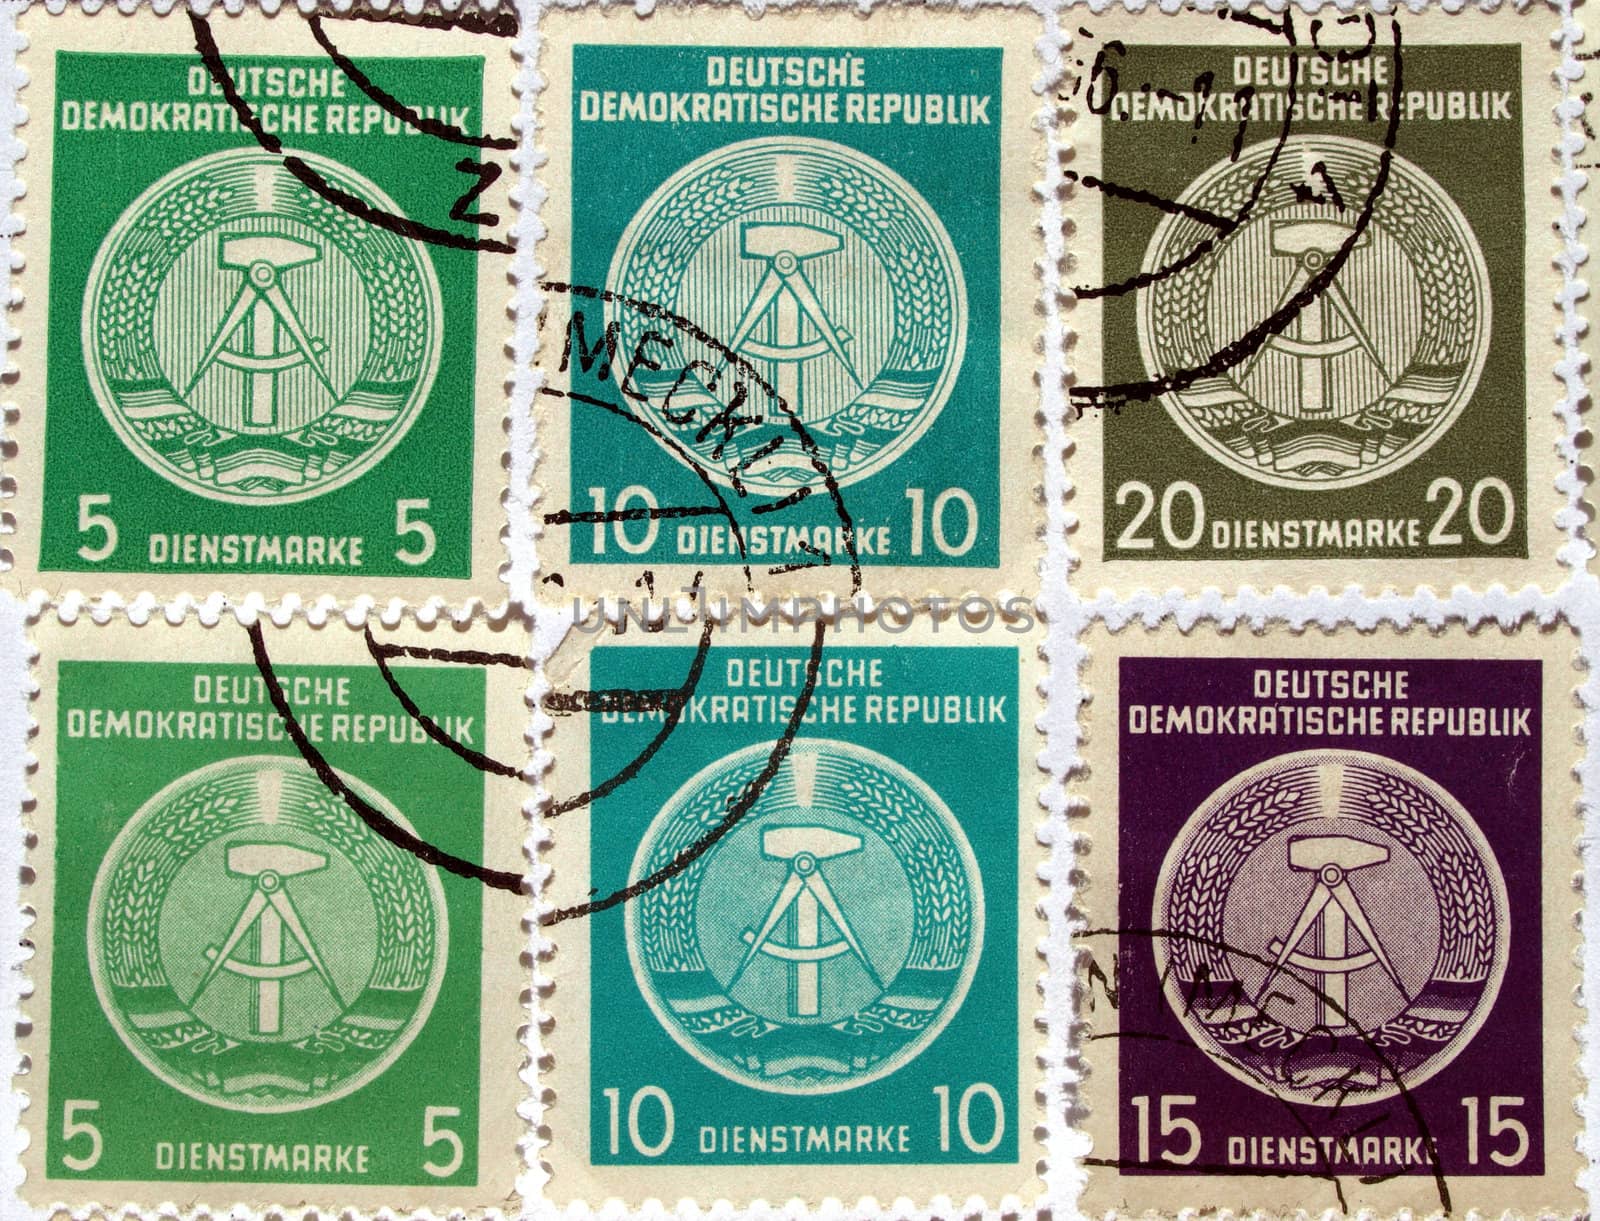 Historical East Germany Stamps (Deutsche Demokratische Republik)